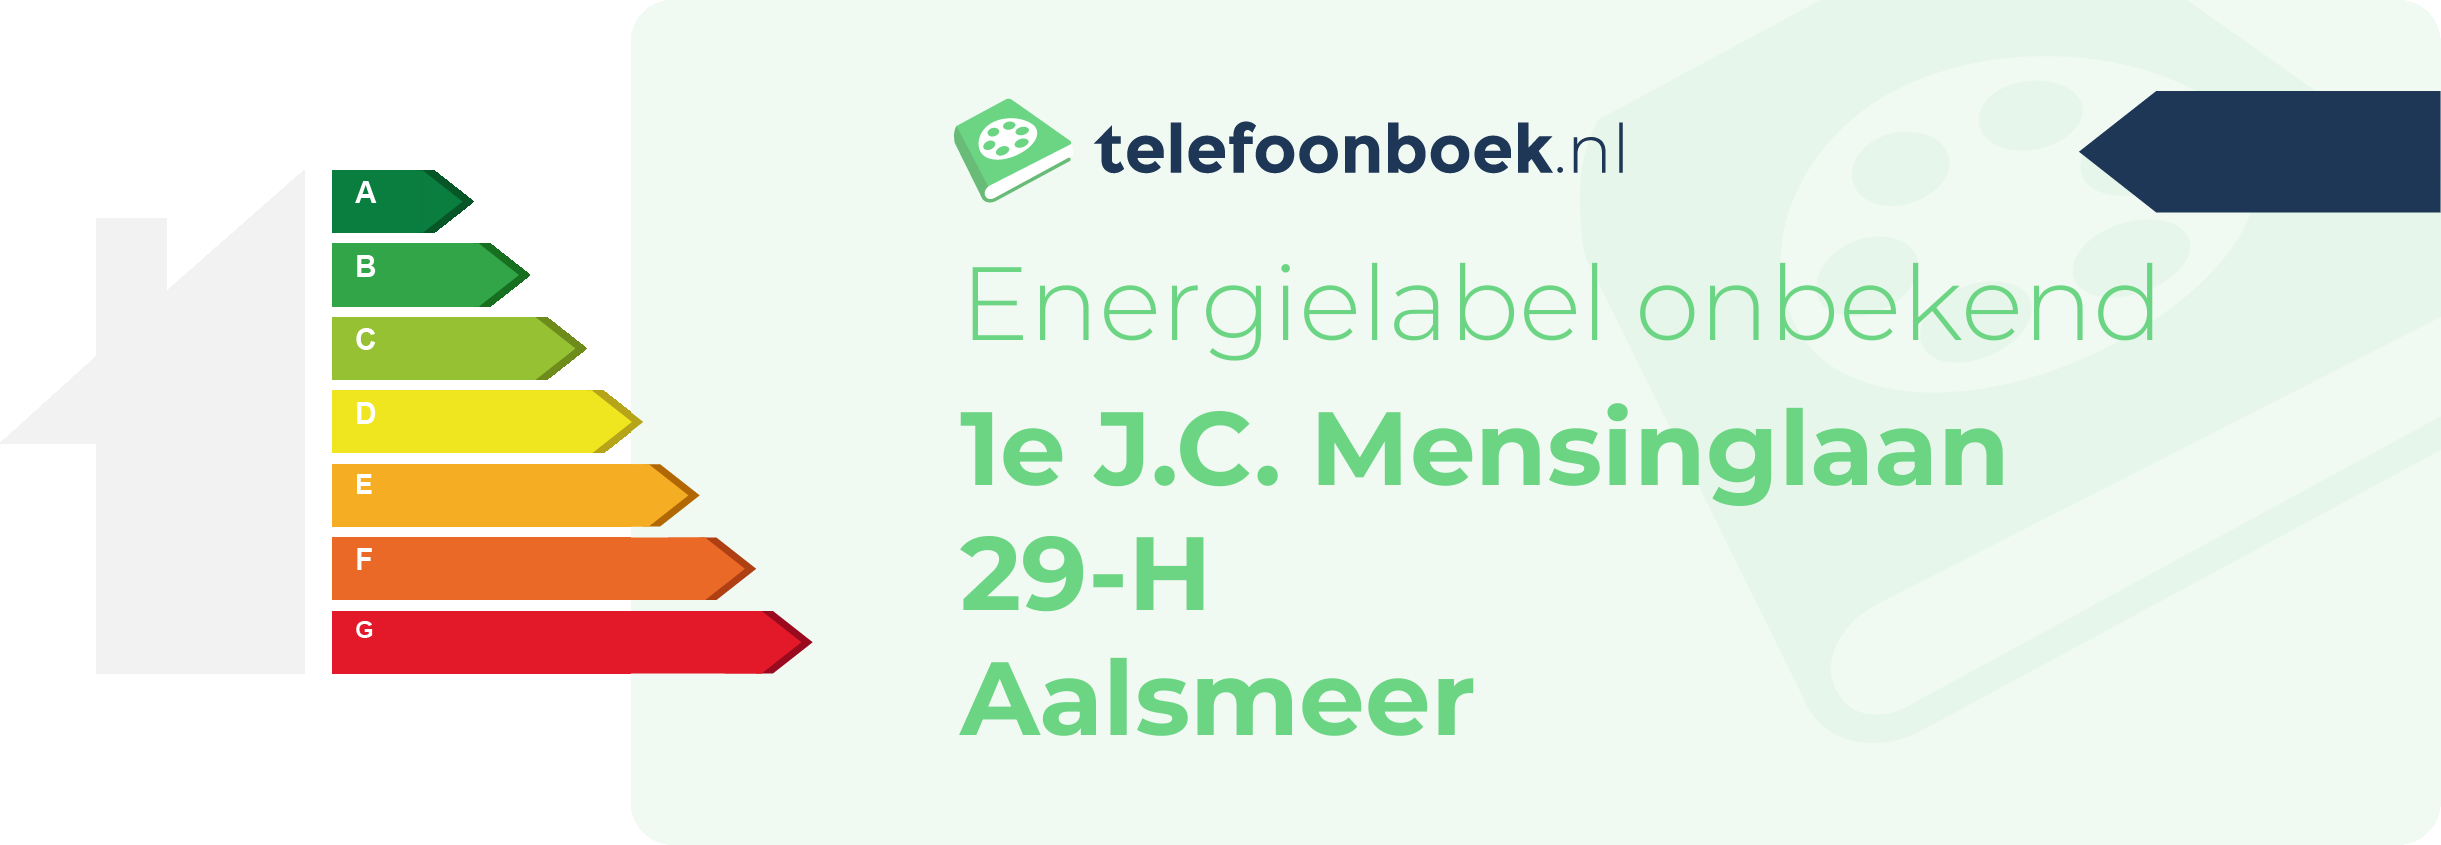 Energielabel 1e J.C. Mensinglaan 29-H Aalsmeer